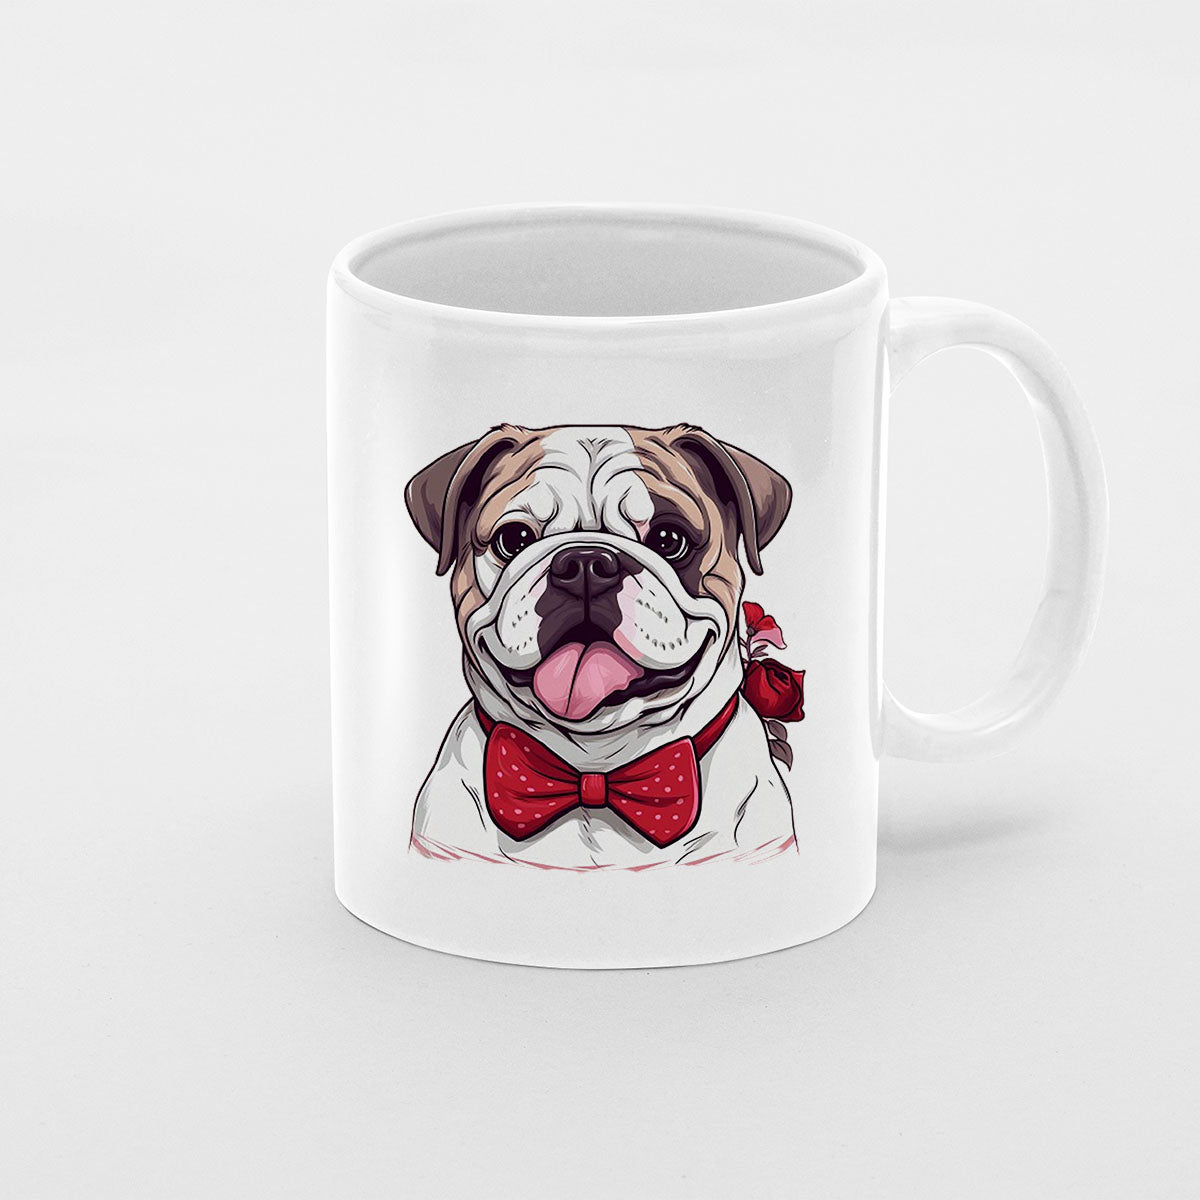 Custom Valentine's Day Dog Mug, Personalized Valentine's Day Gift for Dog Lover, Cute Bulldog Love Ceramic Mug, Dog Coffee Mugs, Personalized Pet Mugs, Cute Valentine Puppy Heart Ceramic Mug, Valentines Gift